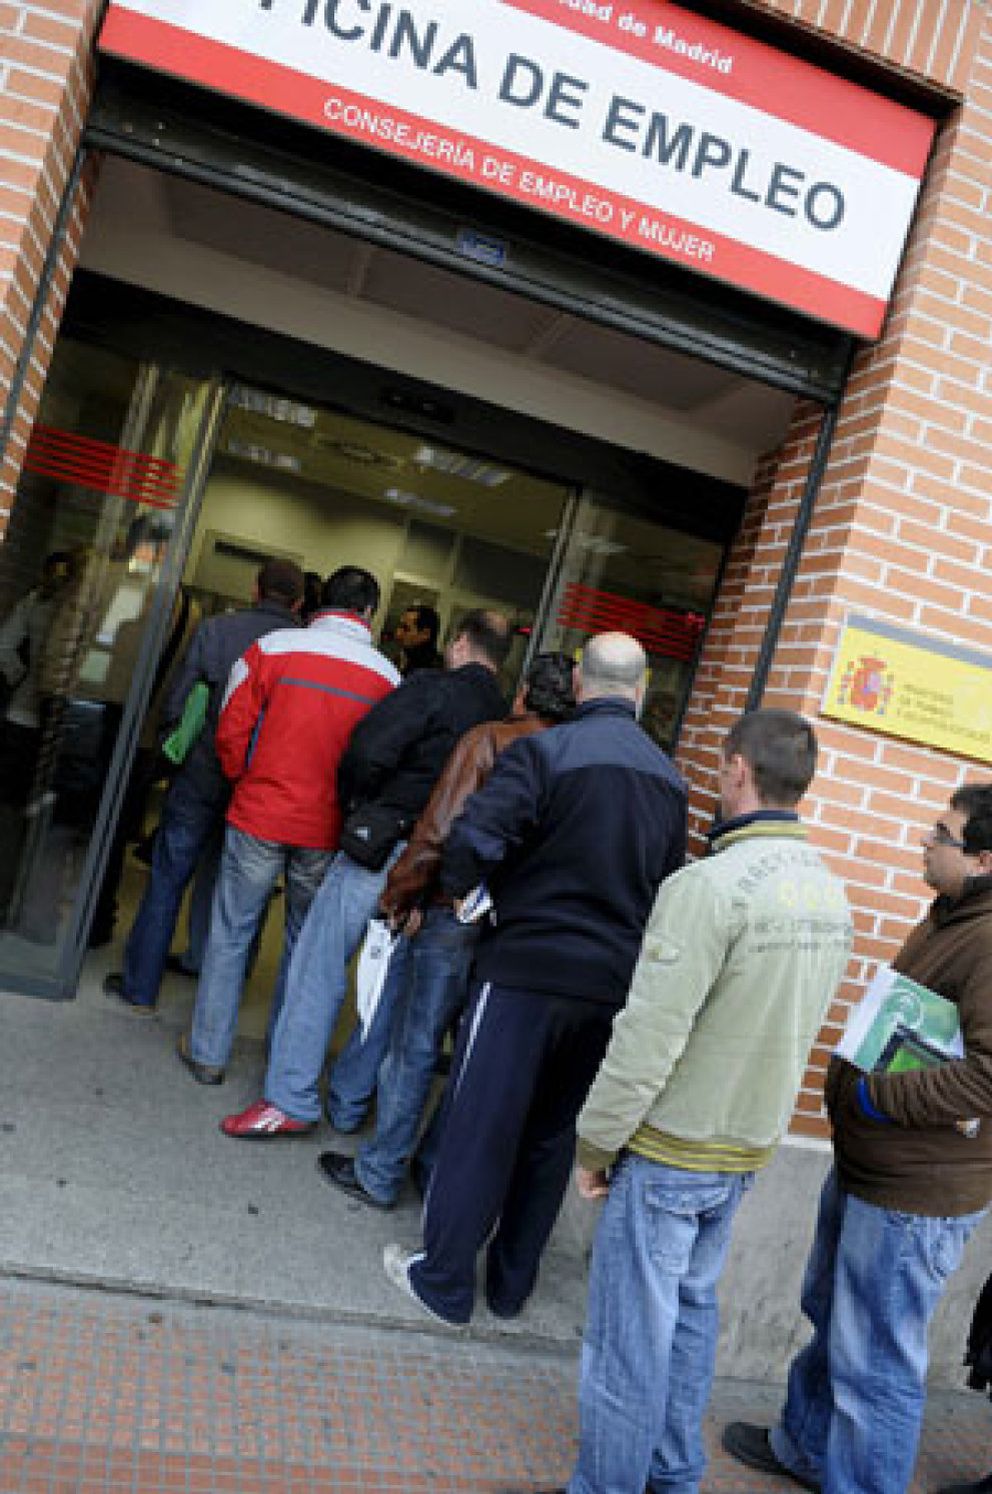 Foto: El paro en España alcanzará este año el 20% y se mantendrá hasta 2012, según UBS